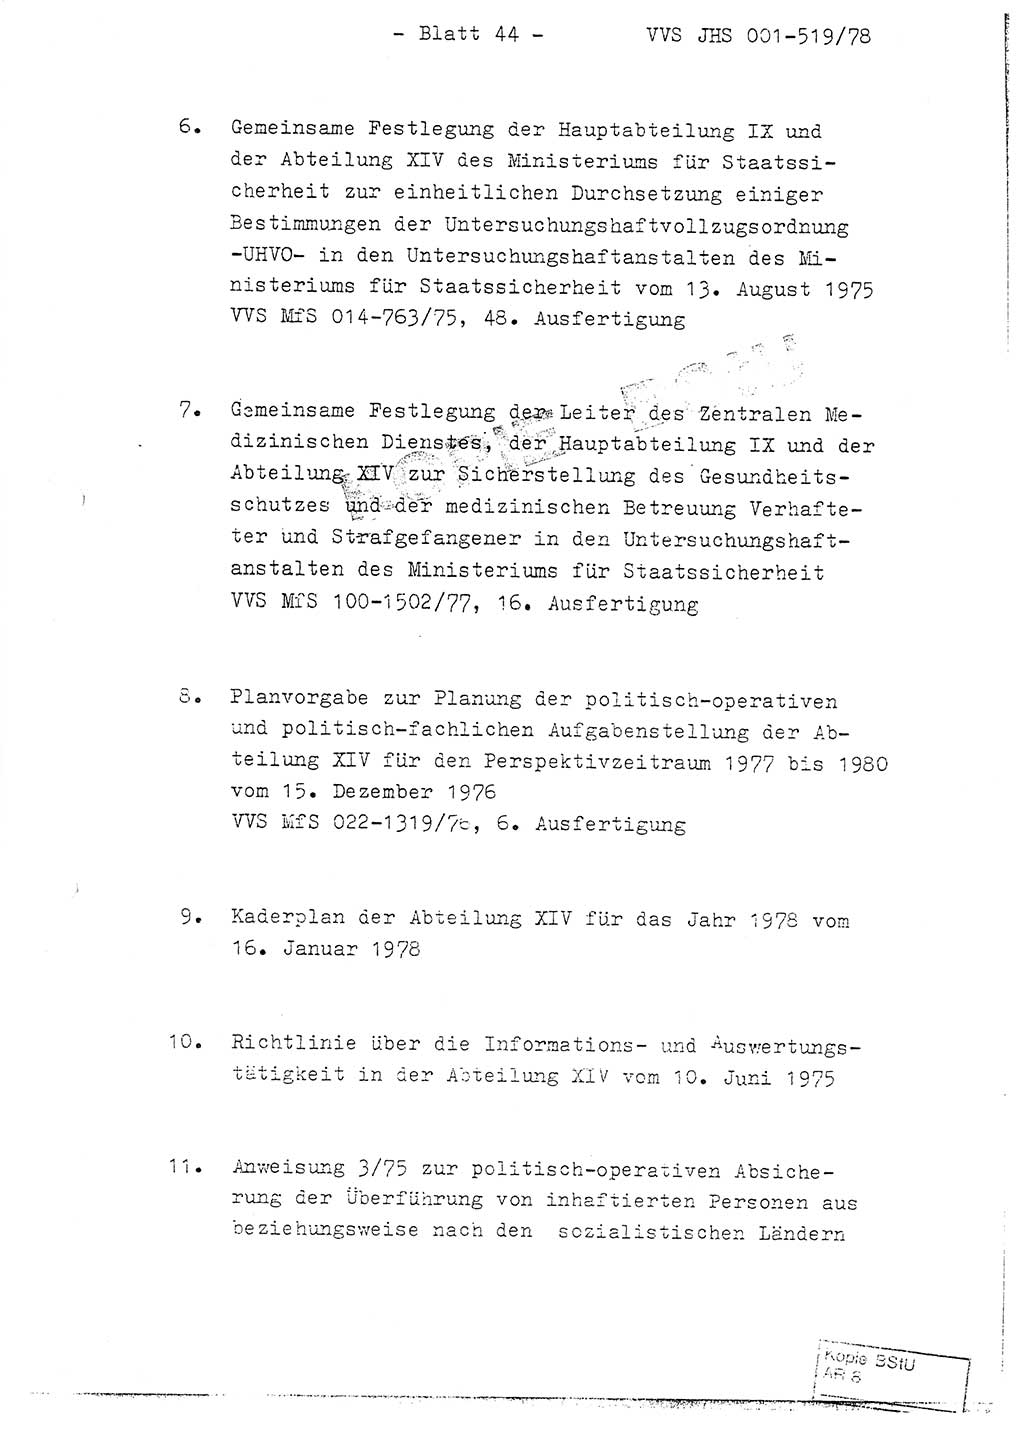 Fachschulabschlußarbeit Hauptmann Alfons Lützelberger (Abt. ⅩⅣ), Ministerium für Staatssicherheit (MfS) [Deutsche Demokratische Republik (DDR)], Juristische Hochschule (JHS), Vertrauliche Verschlußsache (VVS) 001-519/78, Potsdam 1978, Blatt 44 (FS-Abschl.-Arb. MfS DDR JHS VVS 001-519/78 1978, Bl. 44)